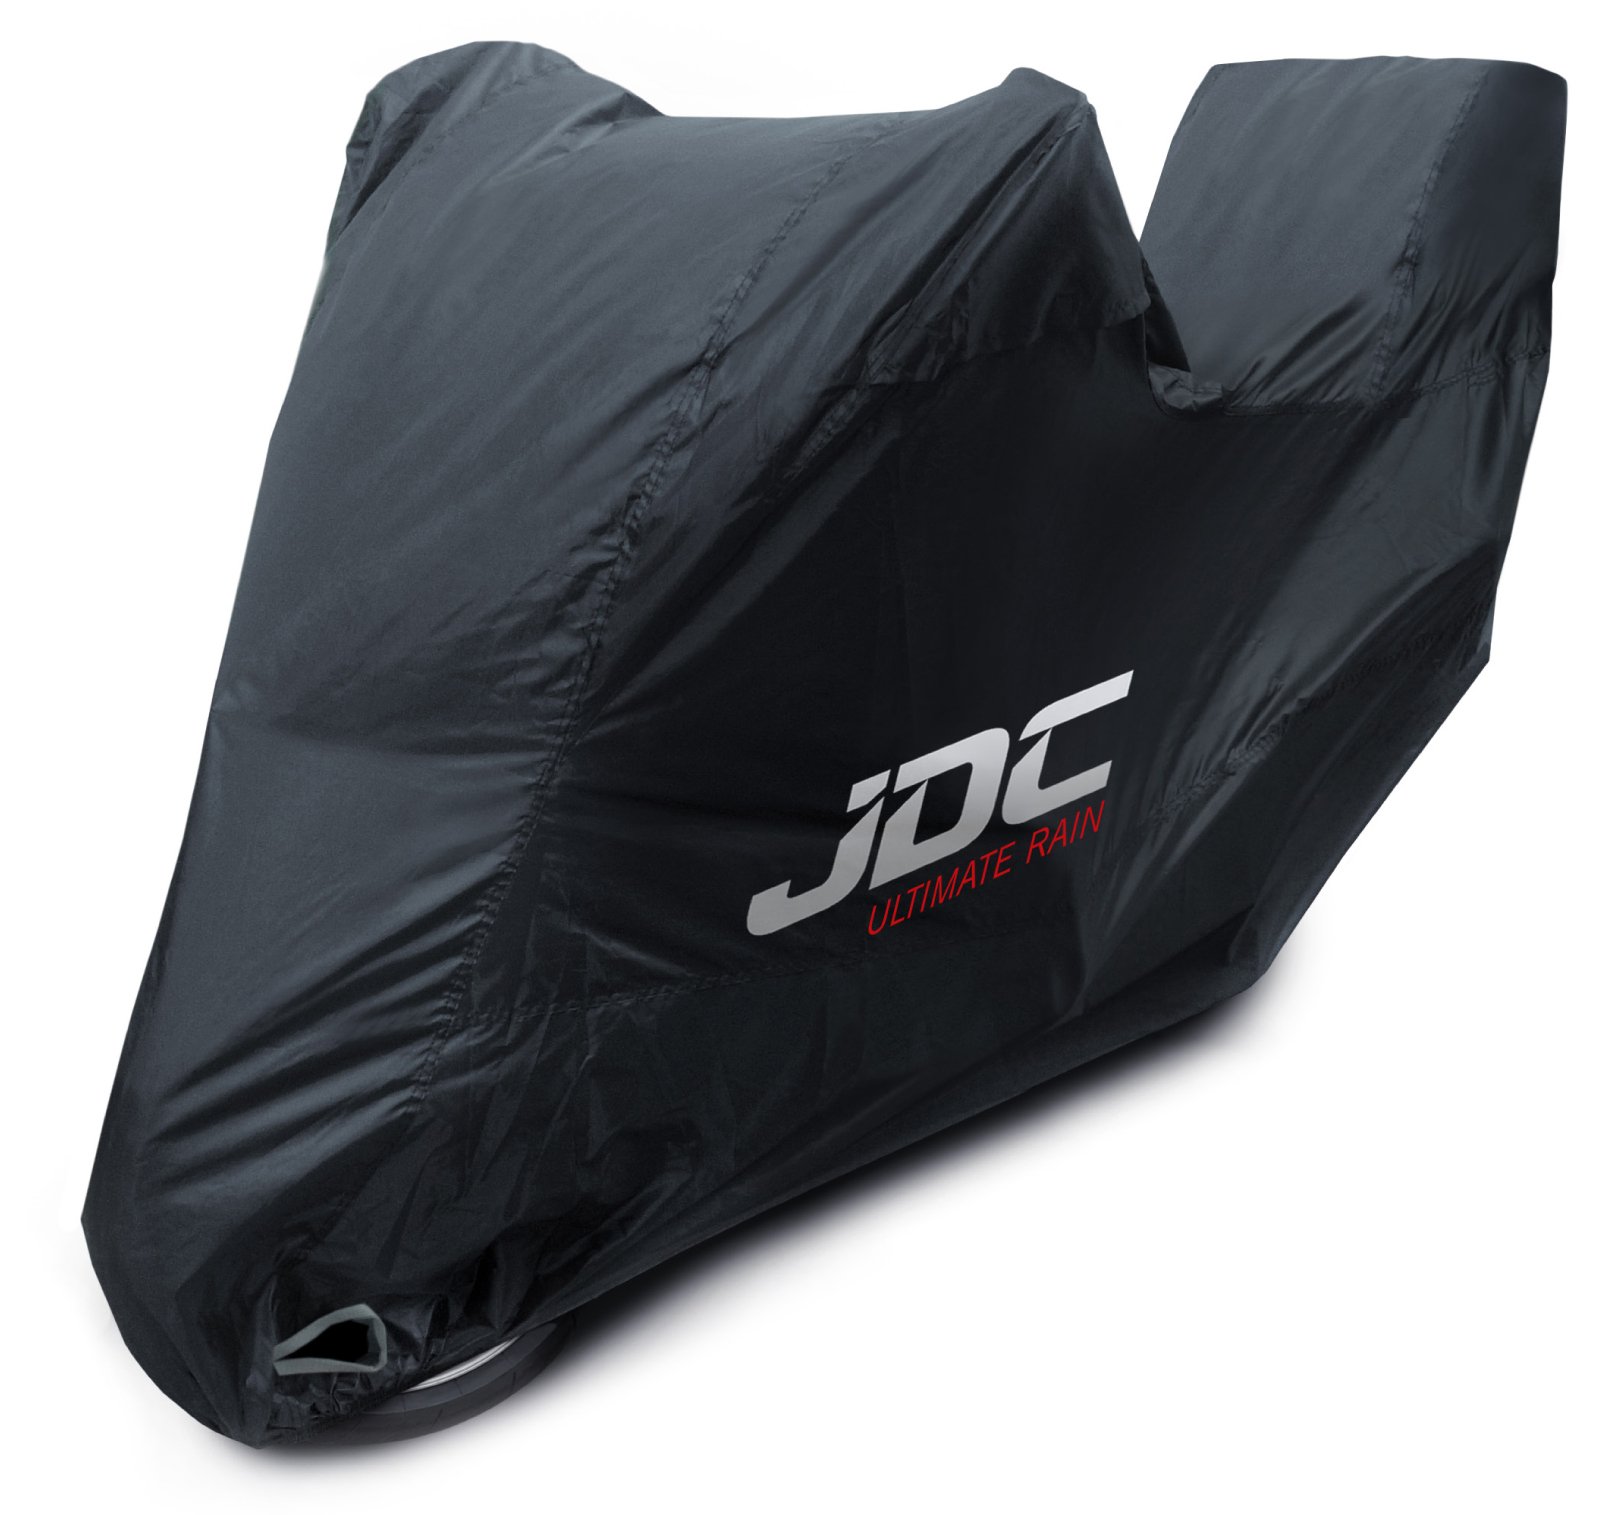 JDC 100% wasserdichte Motorradabdeckung – Ultimate RAIN (Strapazierfähig, weiches Futter, hitzebeständig, verschweißte Nähte) - XL Top-Box von JDC